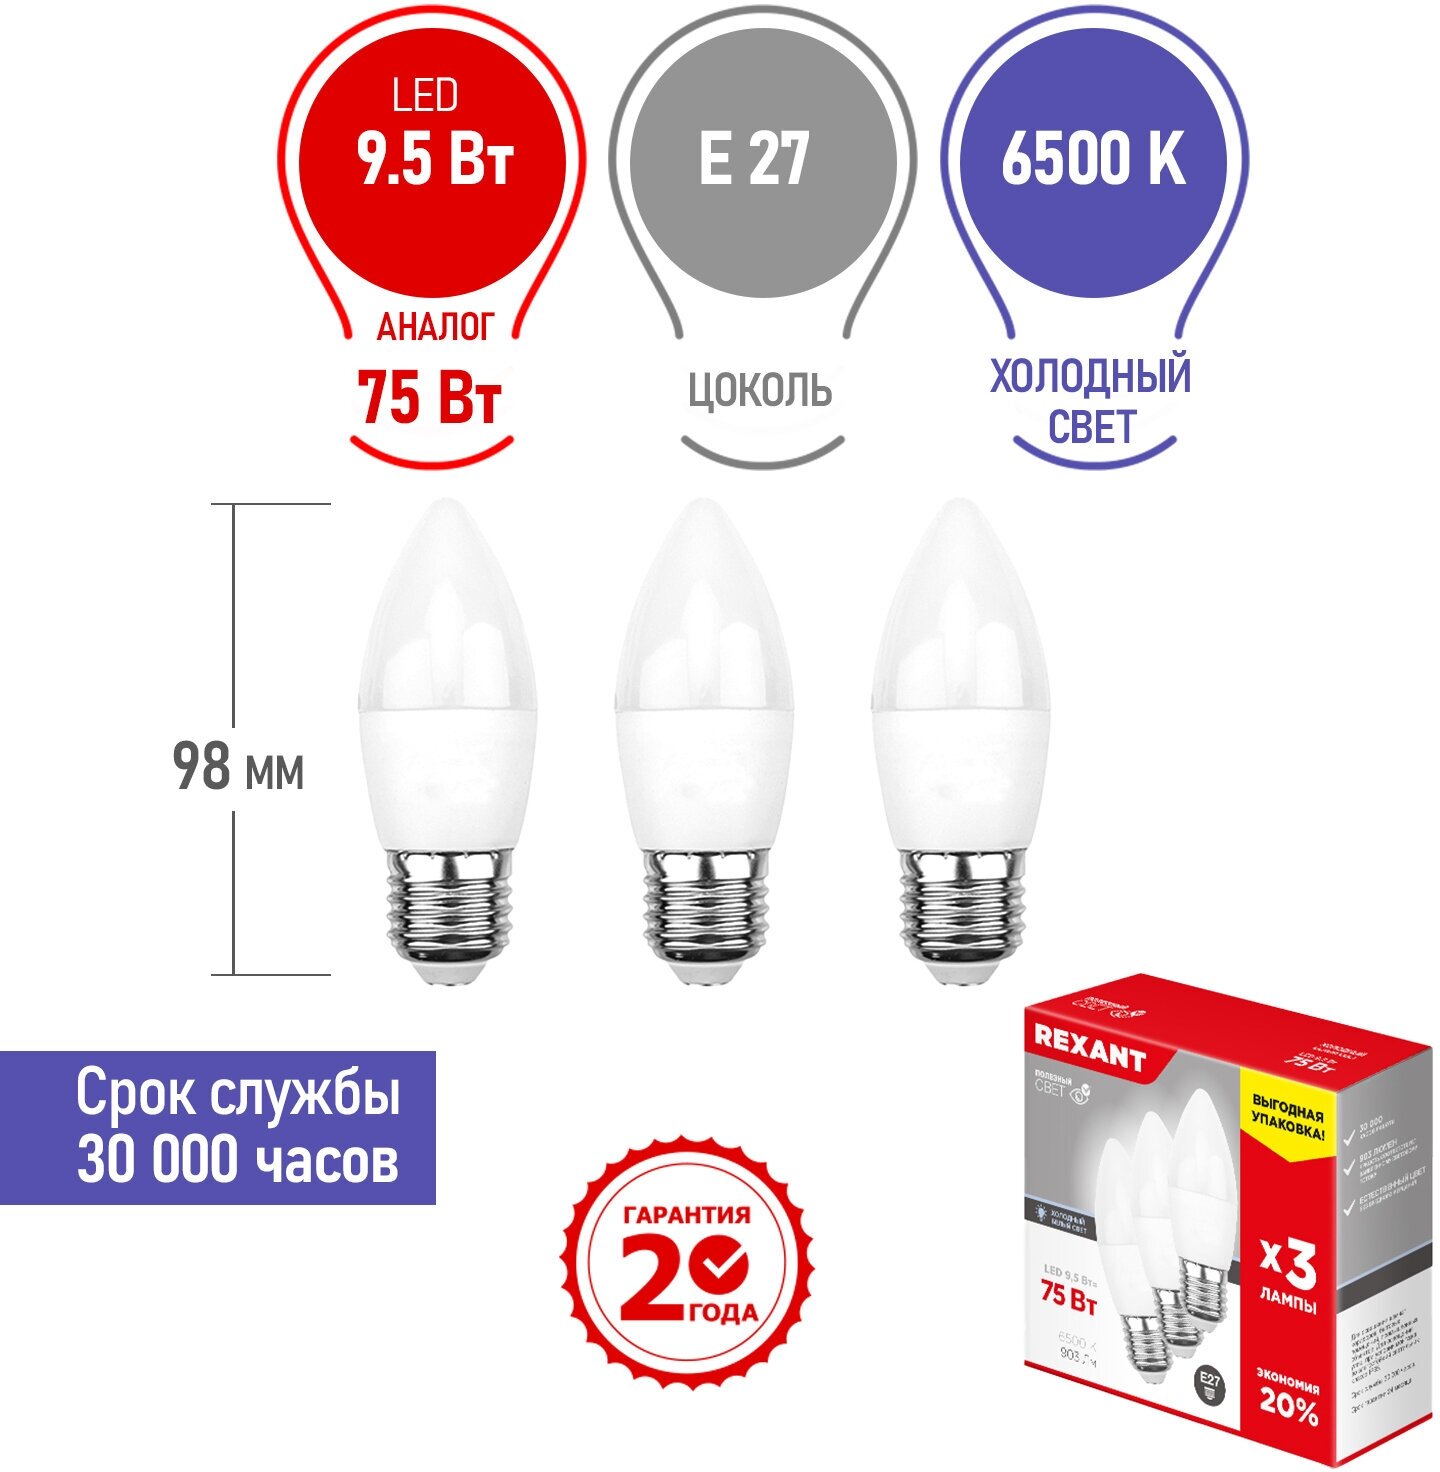 Набор лампа лампочка светодиодная Свеча CN 9.5 Вт E27 903Лм 6500 K холодное свечение в комплекте 3 штуки